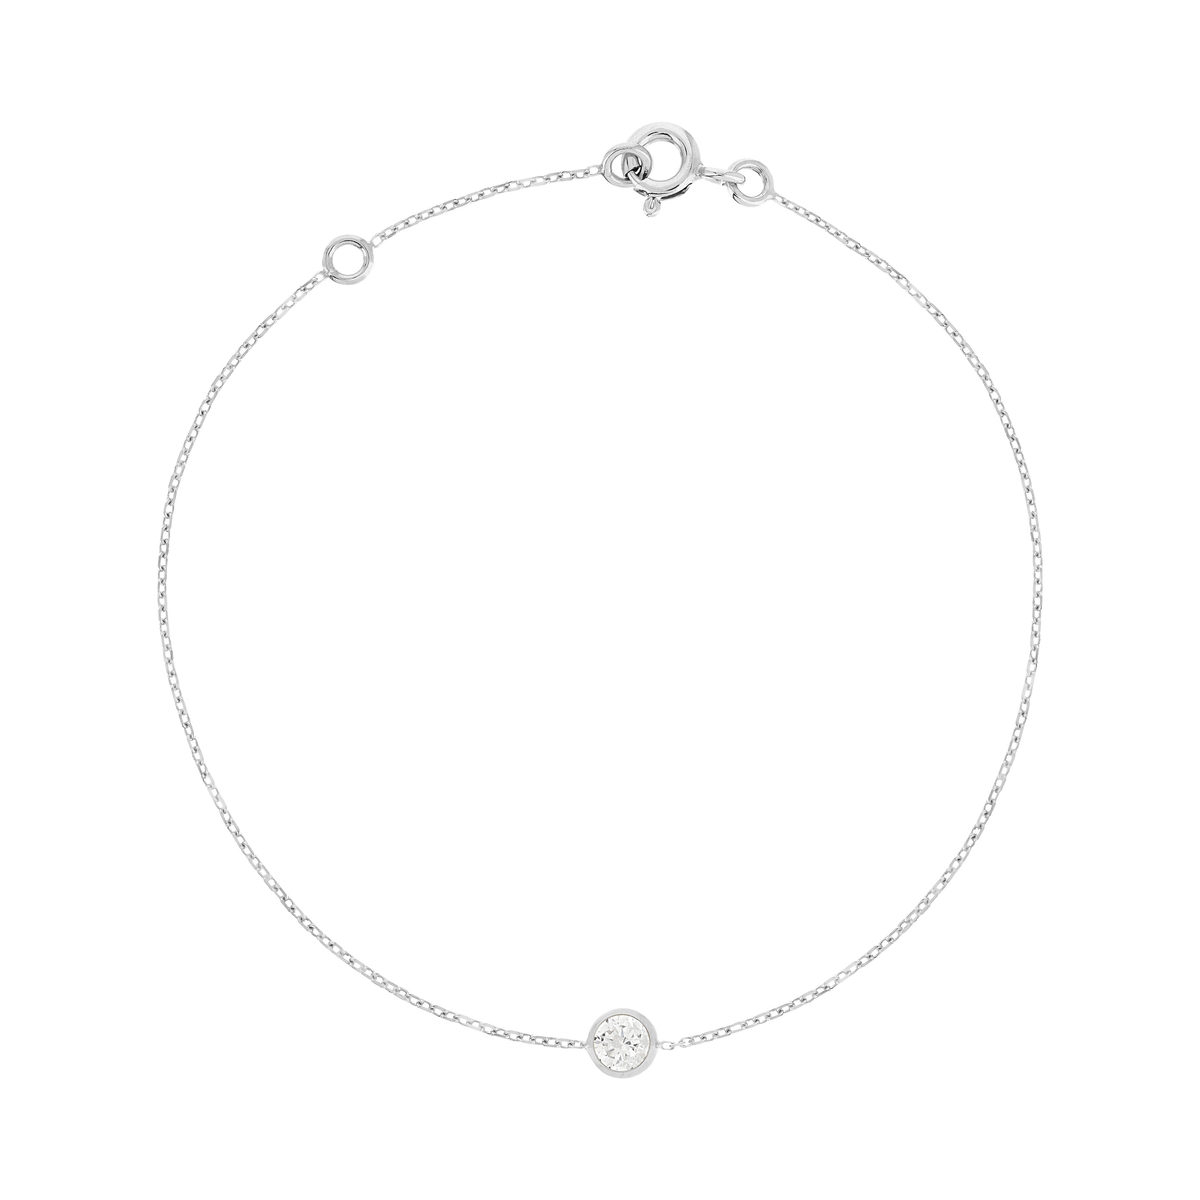 Bracelet or 375 blanc zirconia 18.5 cm